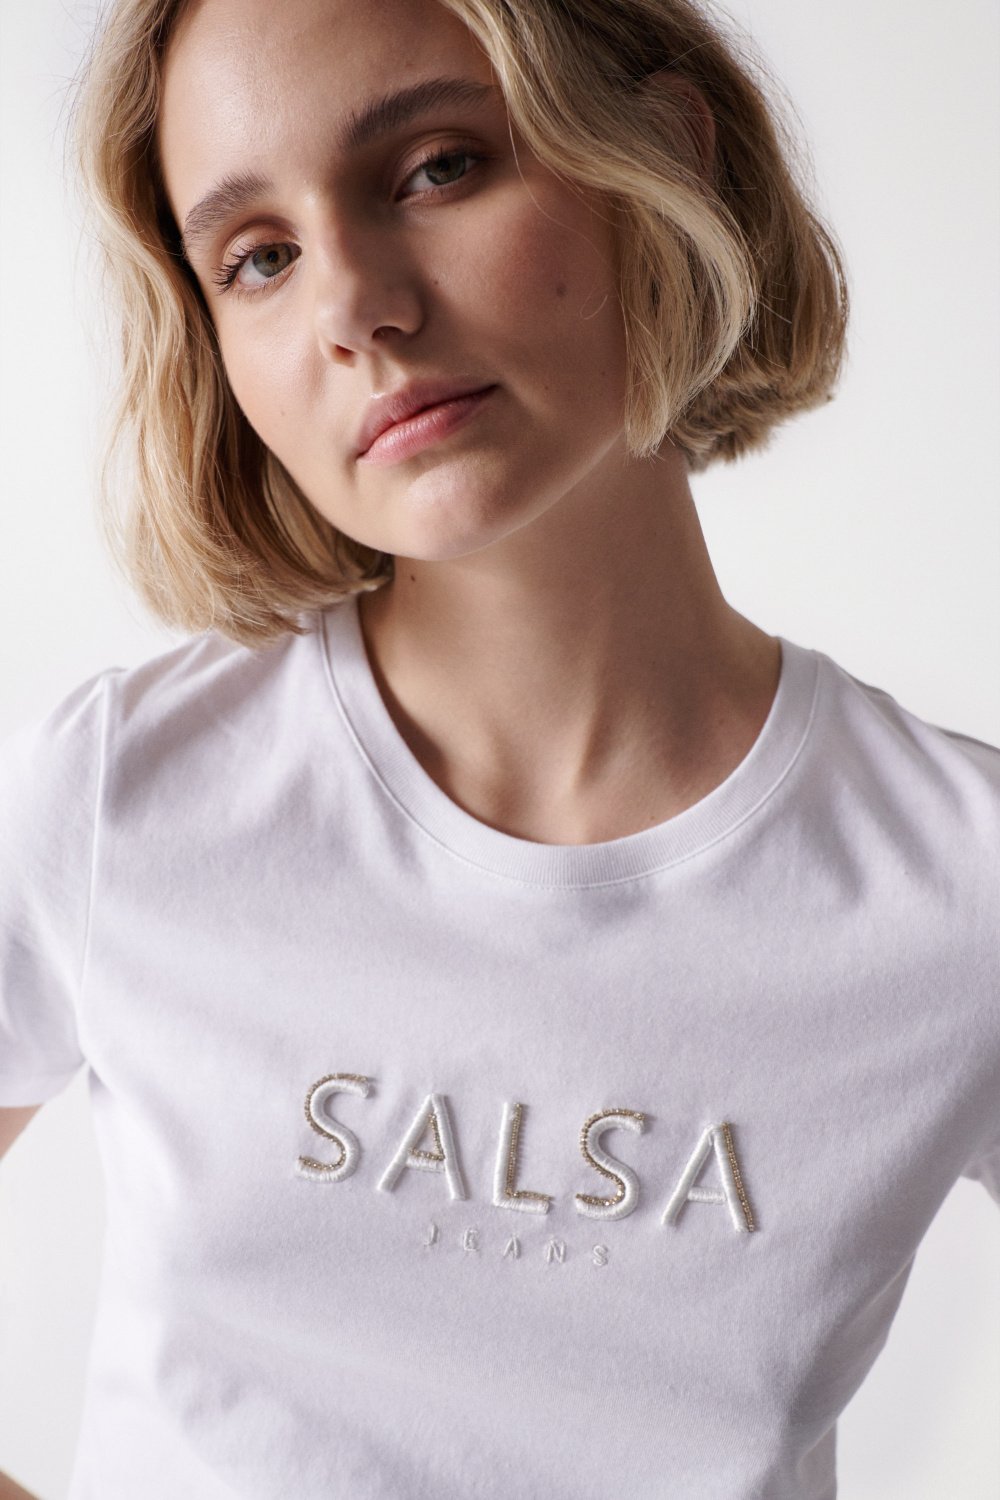 Camisola Branca com Branding - Salsa